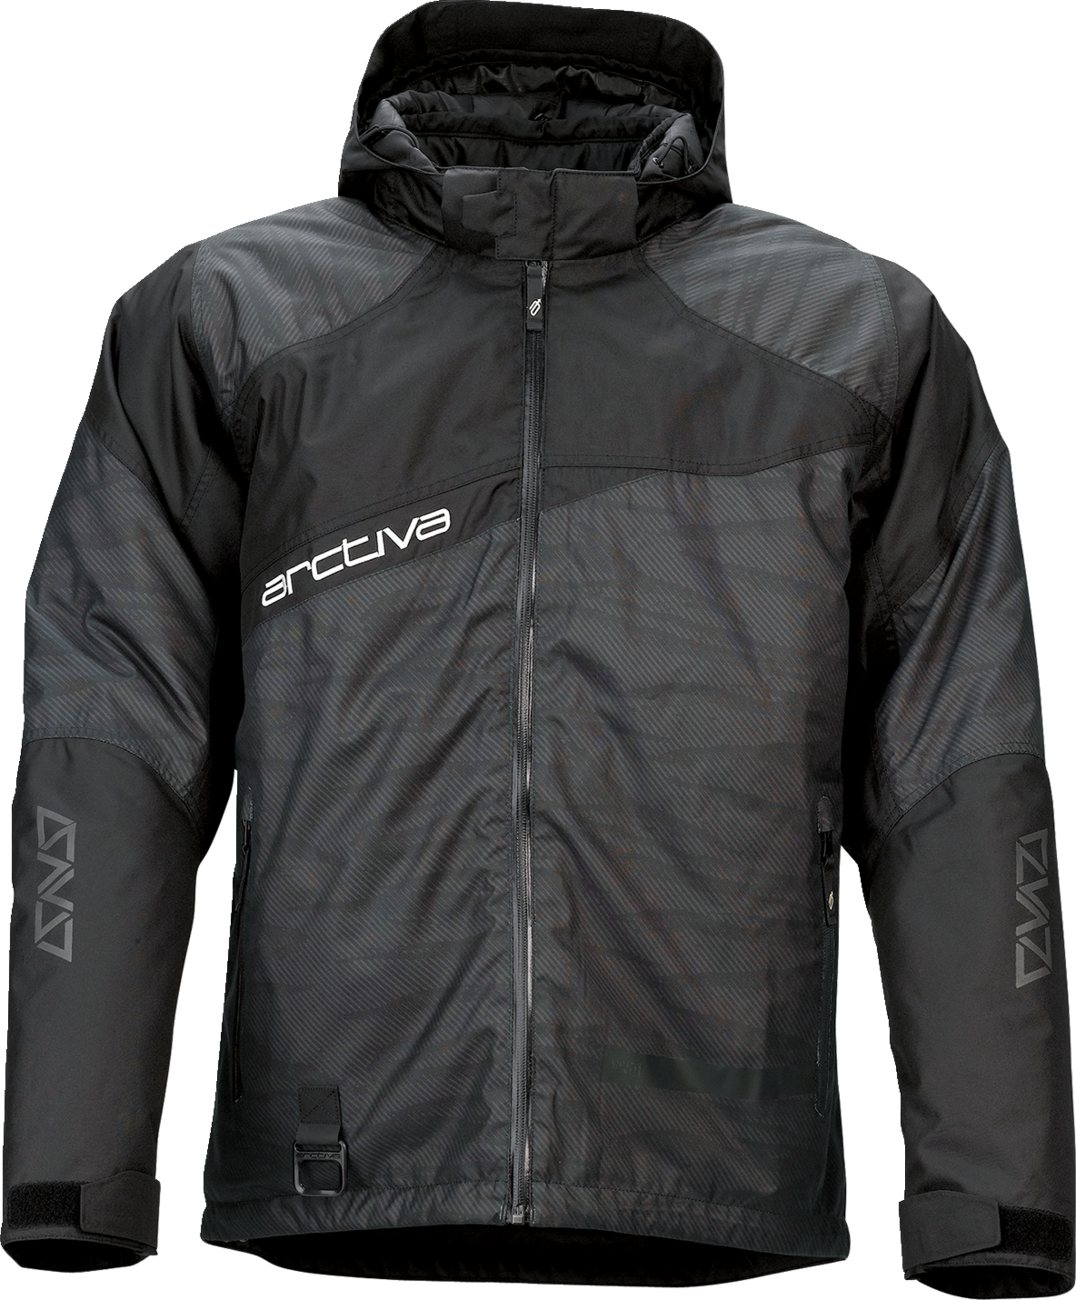 ARCTIVA Pivot 5 Hooded Jacket - Black - XL 3120-2077